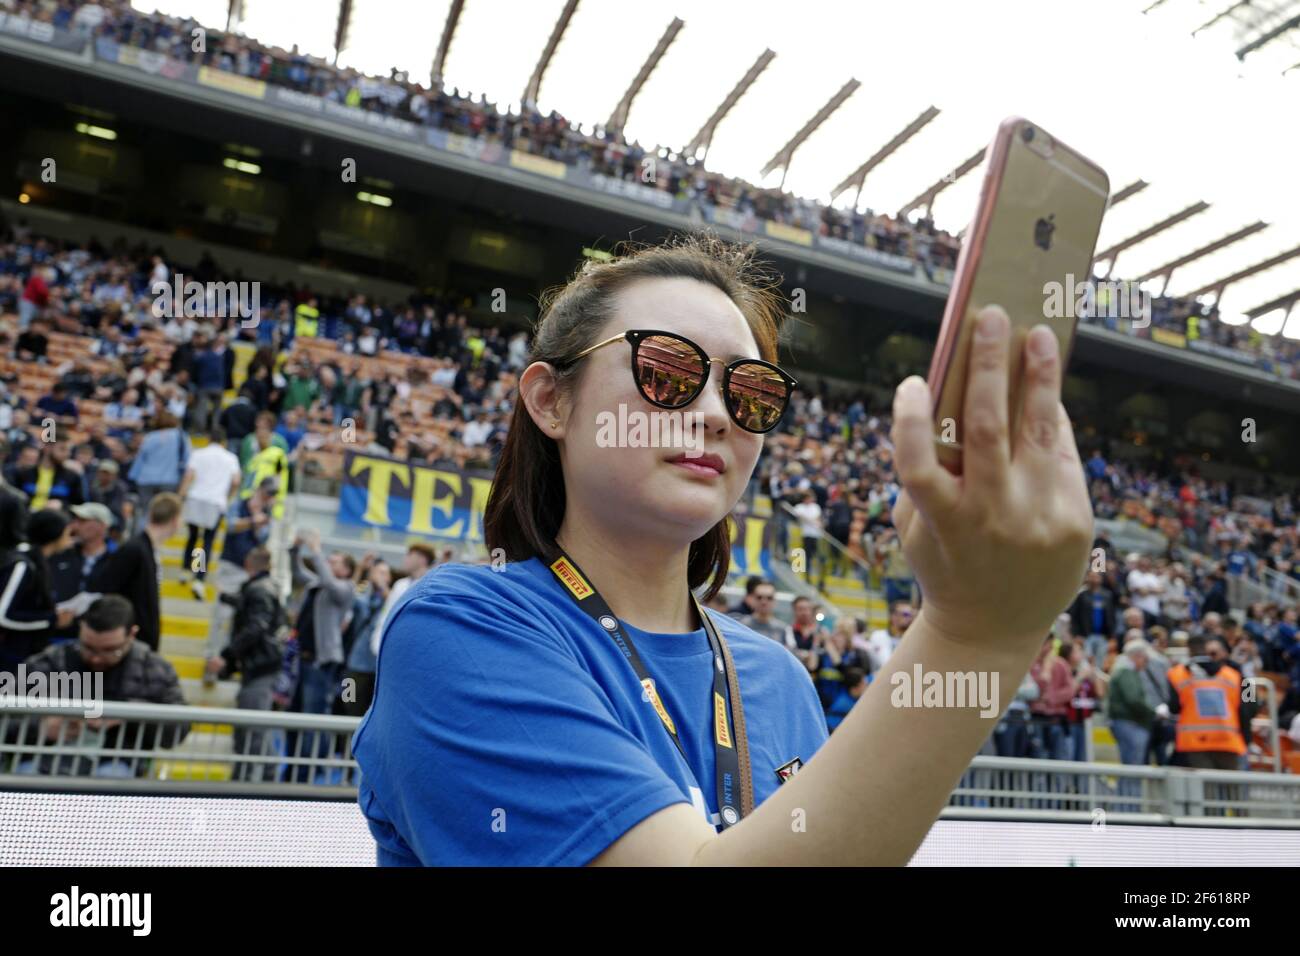 Une jeune fille chinoise, l'fan de football d'Inter Milan, prend un portrait de selfie avec un iPhone au stade de football de san siro, à Milan. Italie. Banque D'Images